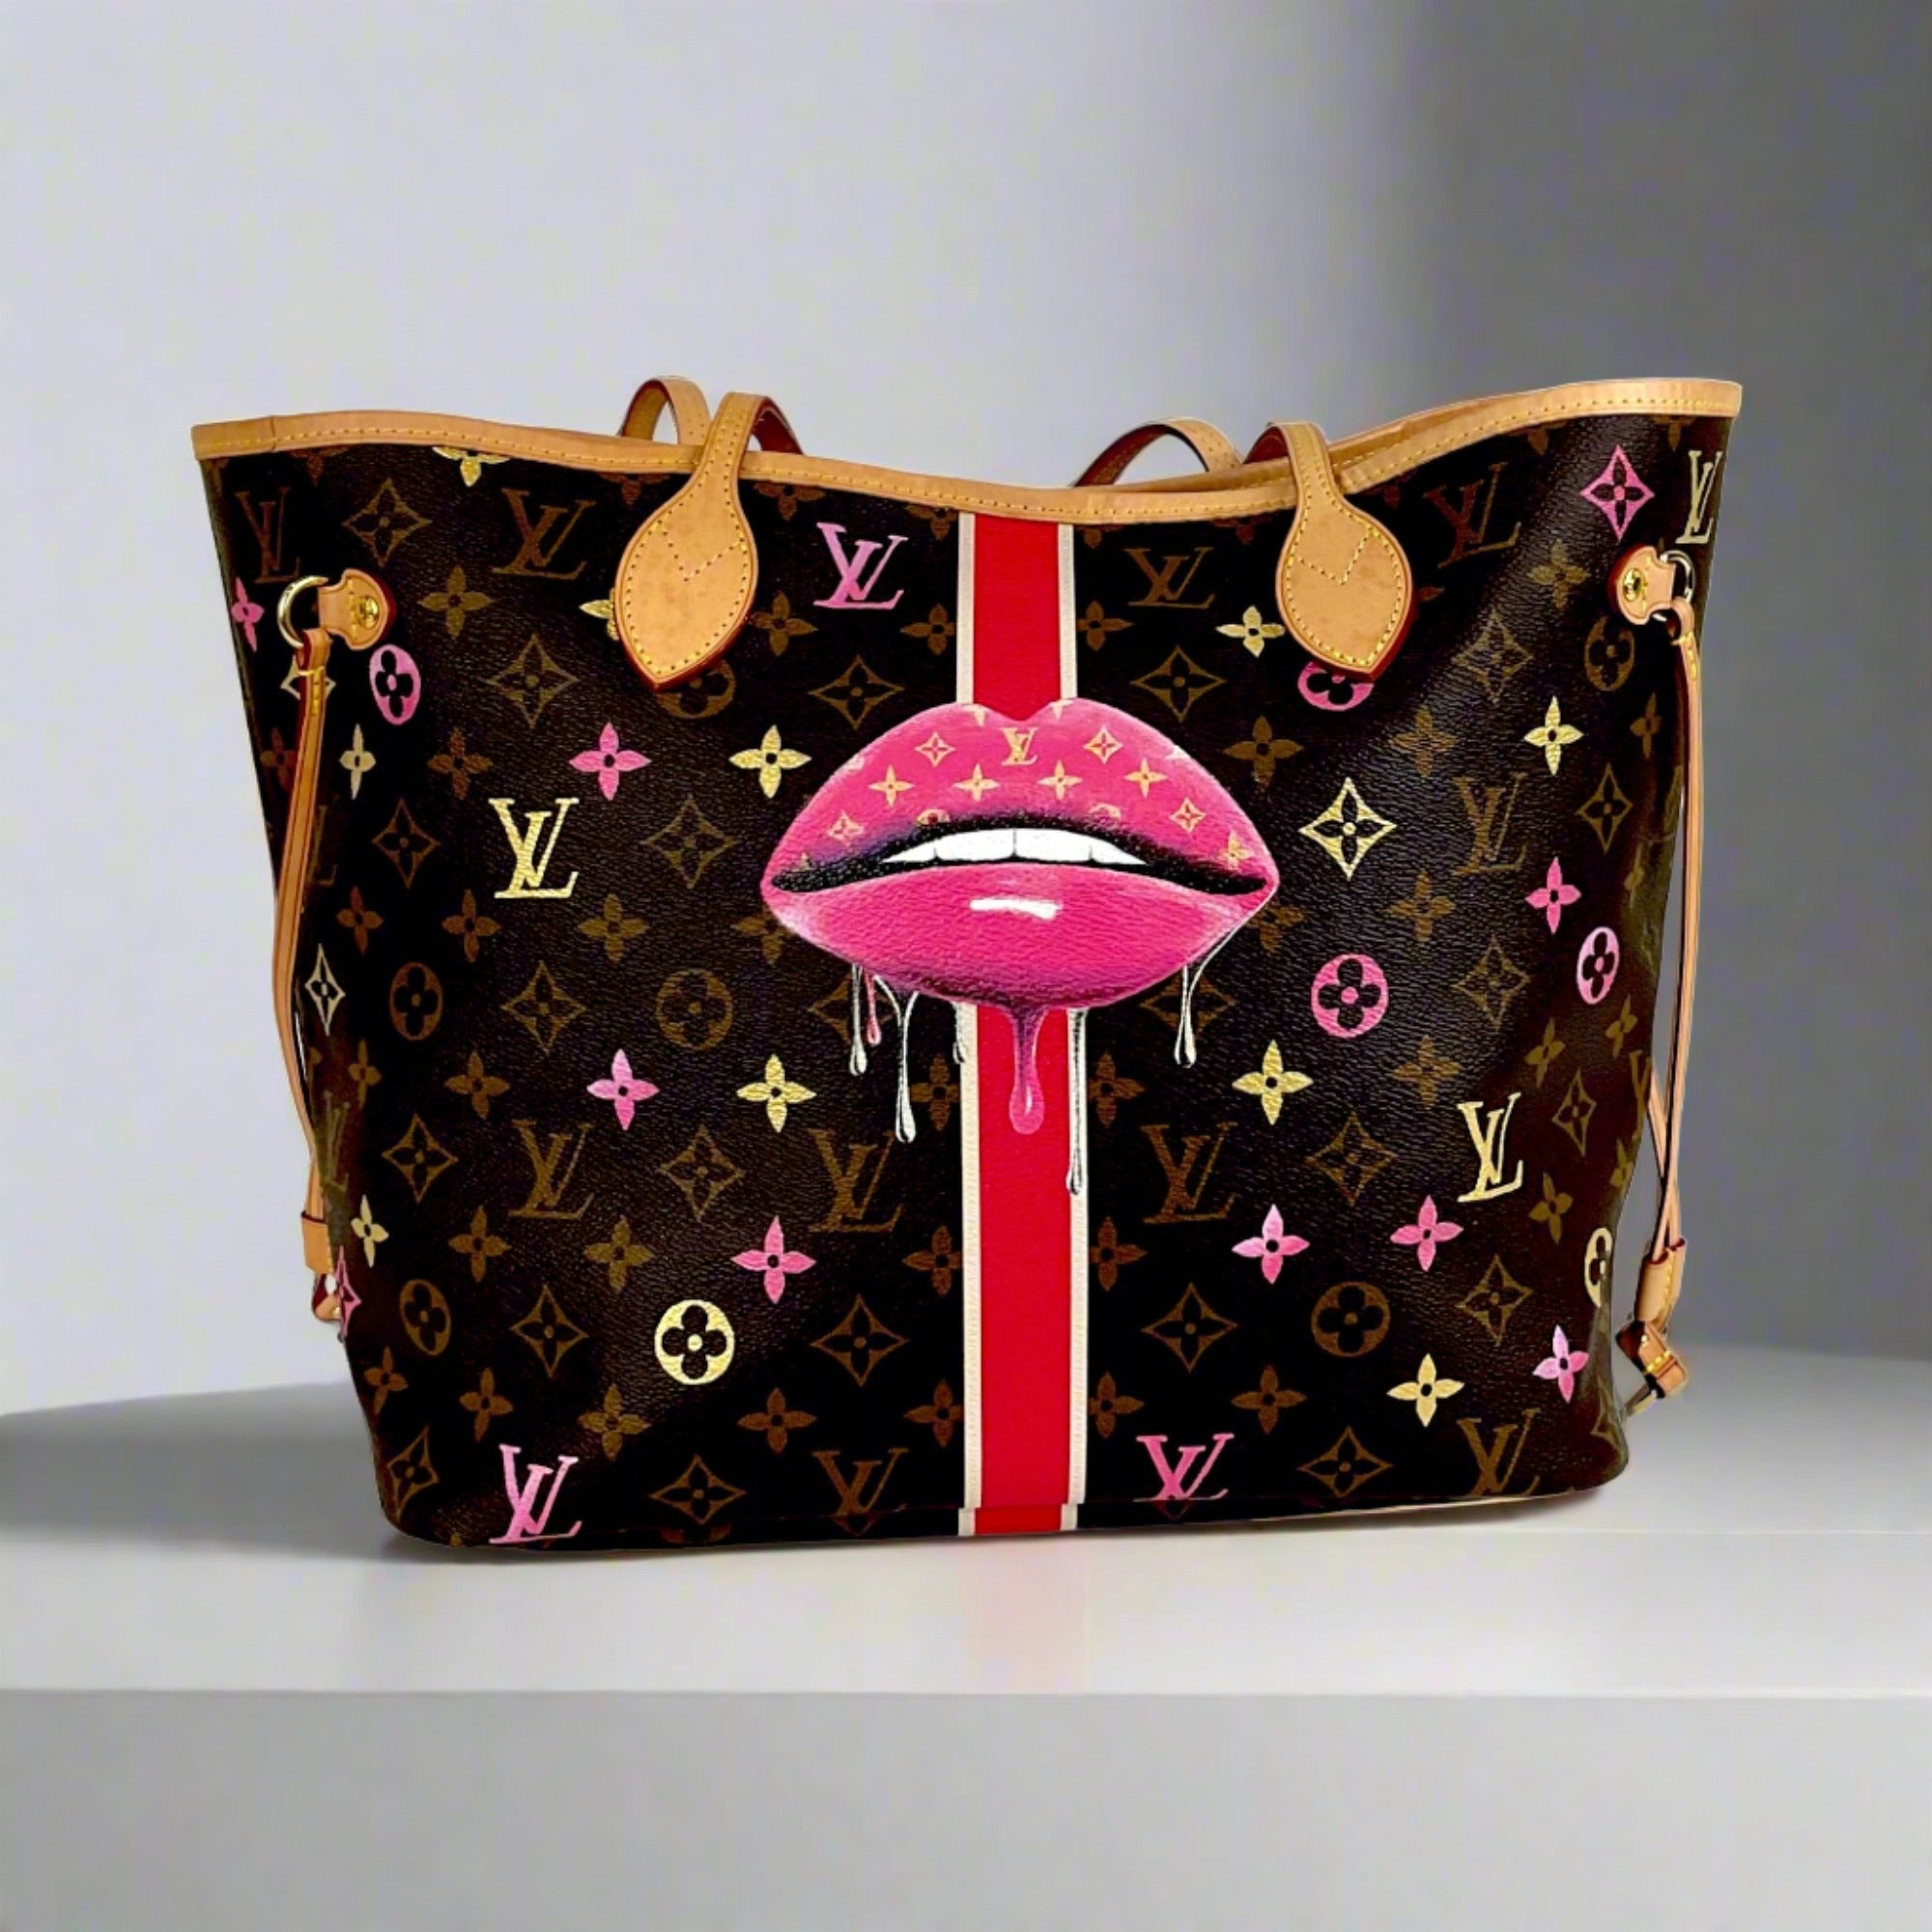 Womens Louis Vuitton Bags, LV Bags